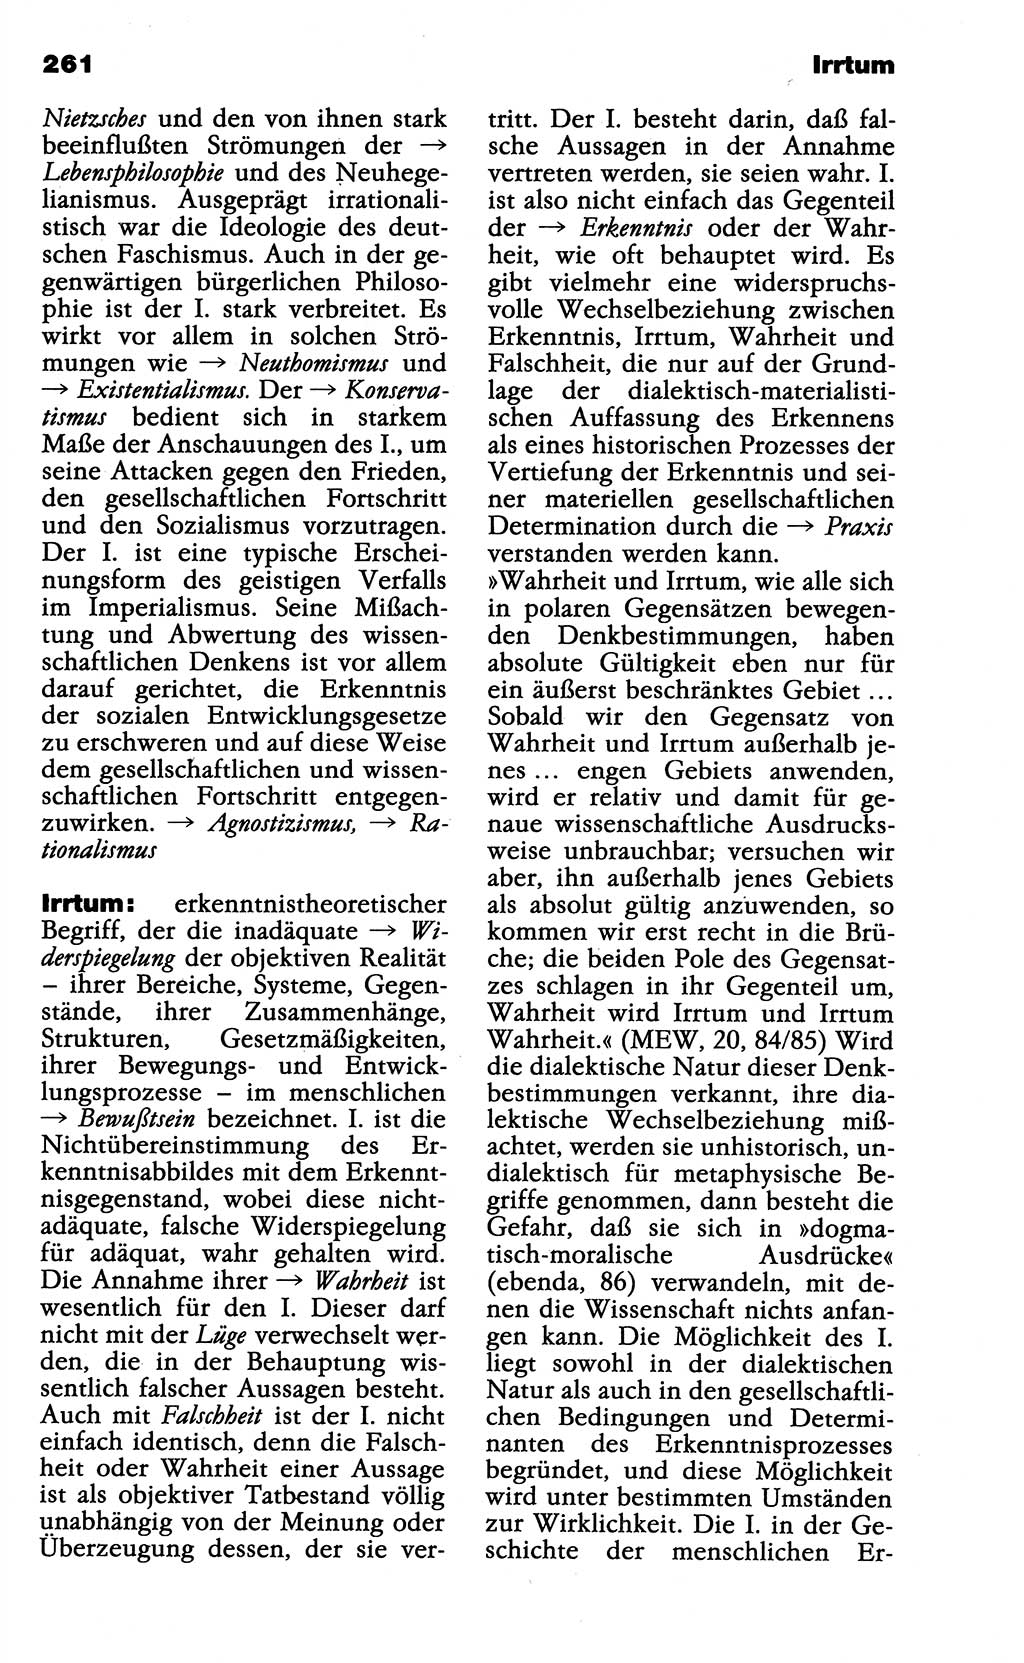 Wörterbuch der marxistisch-leninistischen Philosophie [Deutsche Demokratische Republik (DDR)] 1985, Seite 261 (Wb. ML Phil. DDR 1985, S. 261)